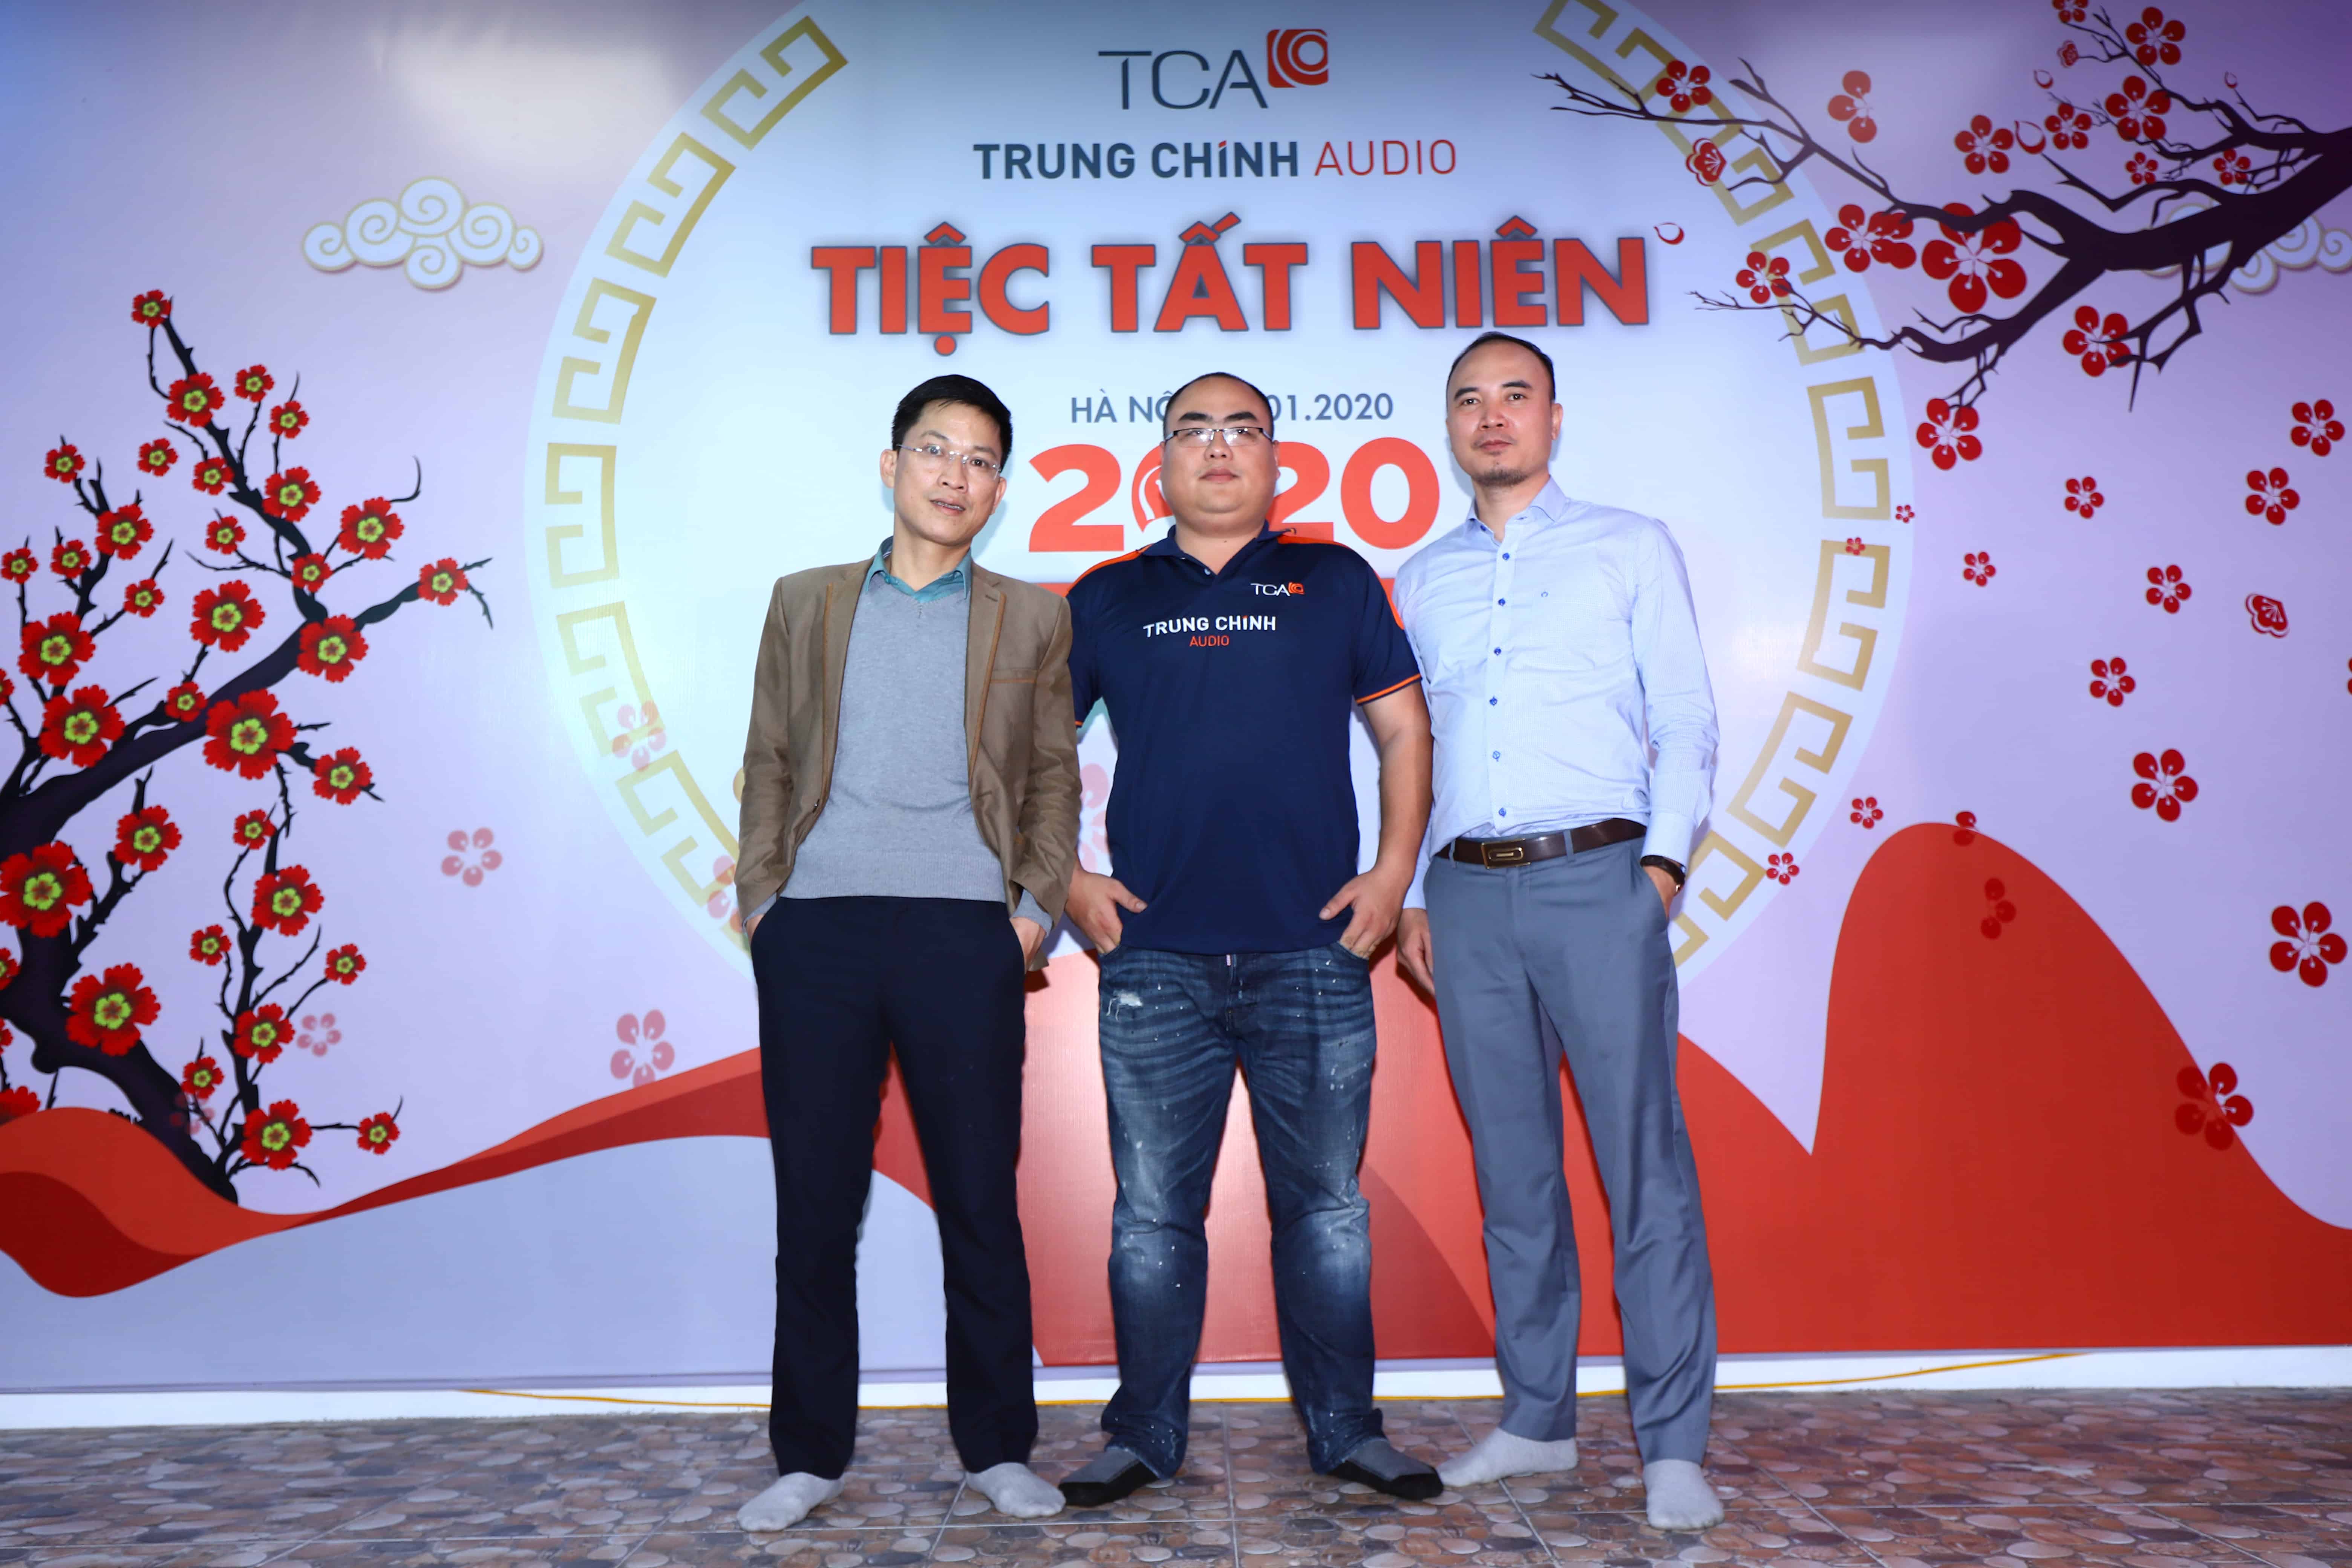 TCA - Trung Chính Audio họp tổng kết cuối năm 2019 và tiệc tất niên chào đón năm mới